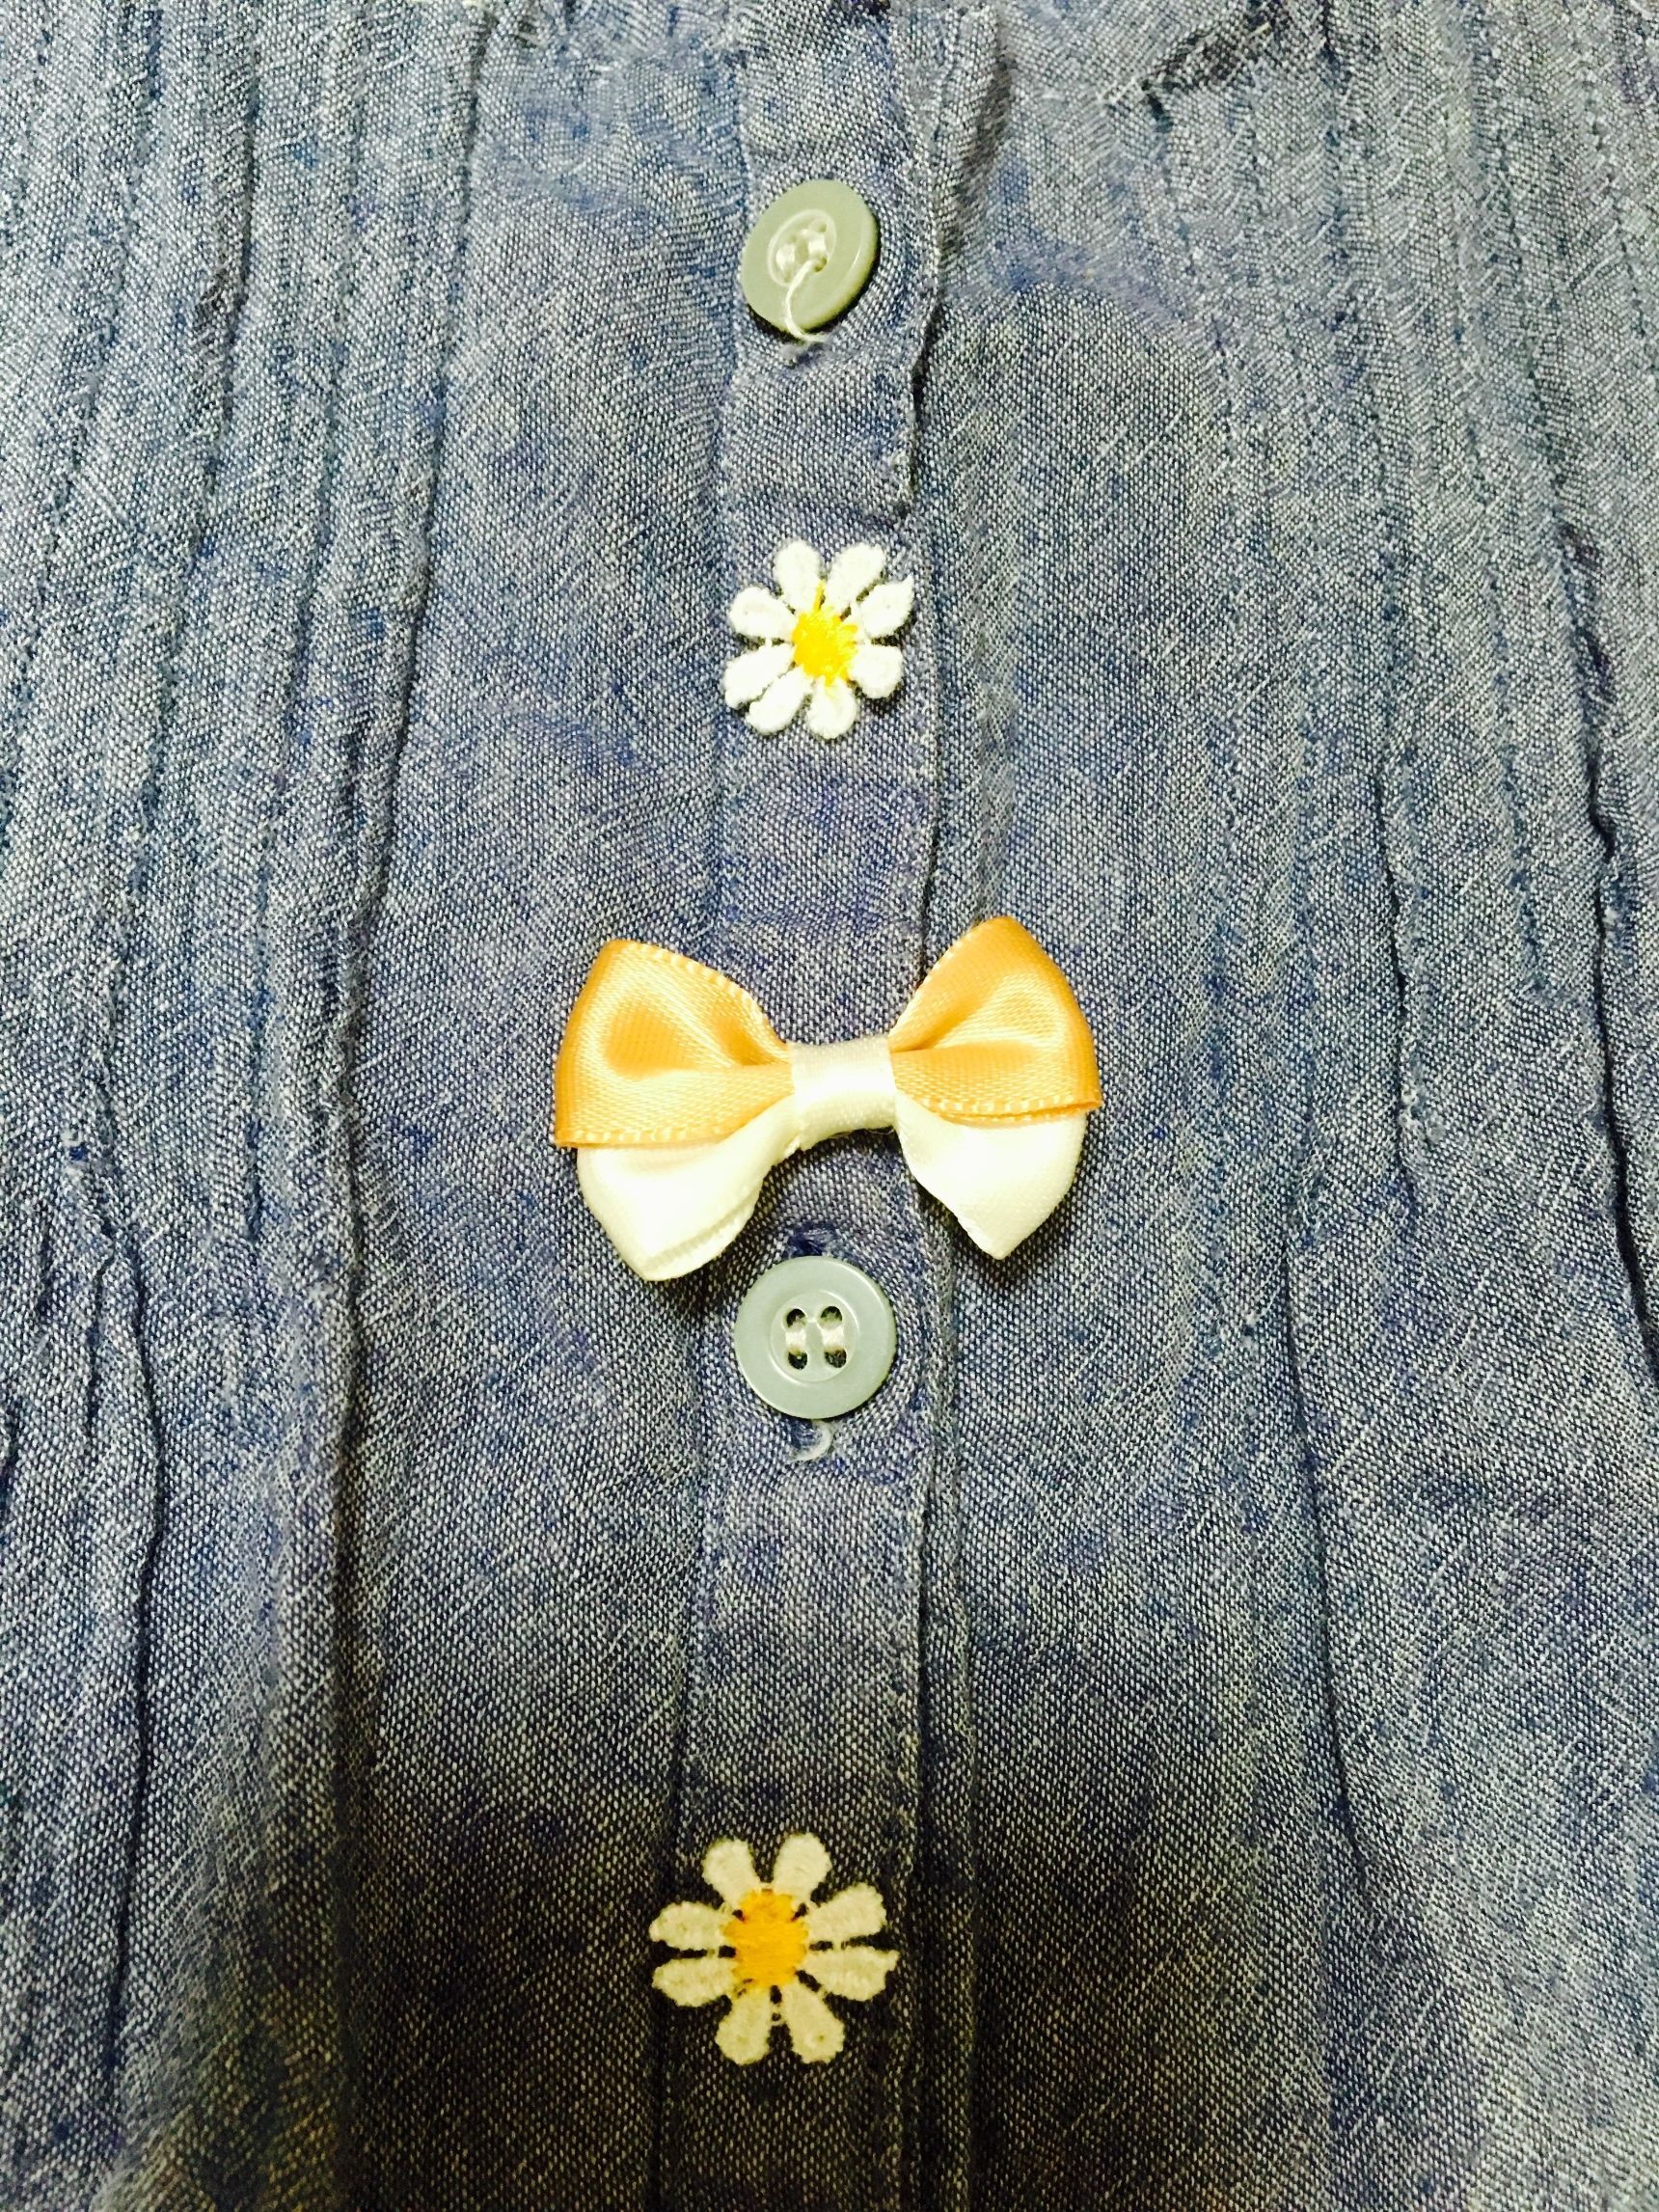 ボタンとボタンの間に、リボンと花のモチーフを縫い付けました！